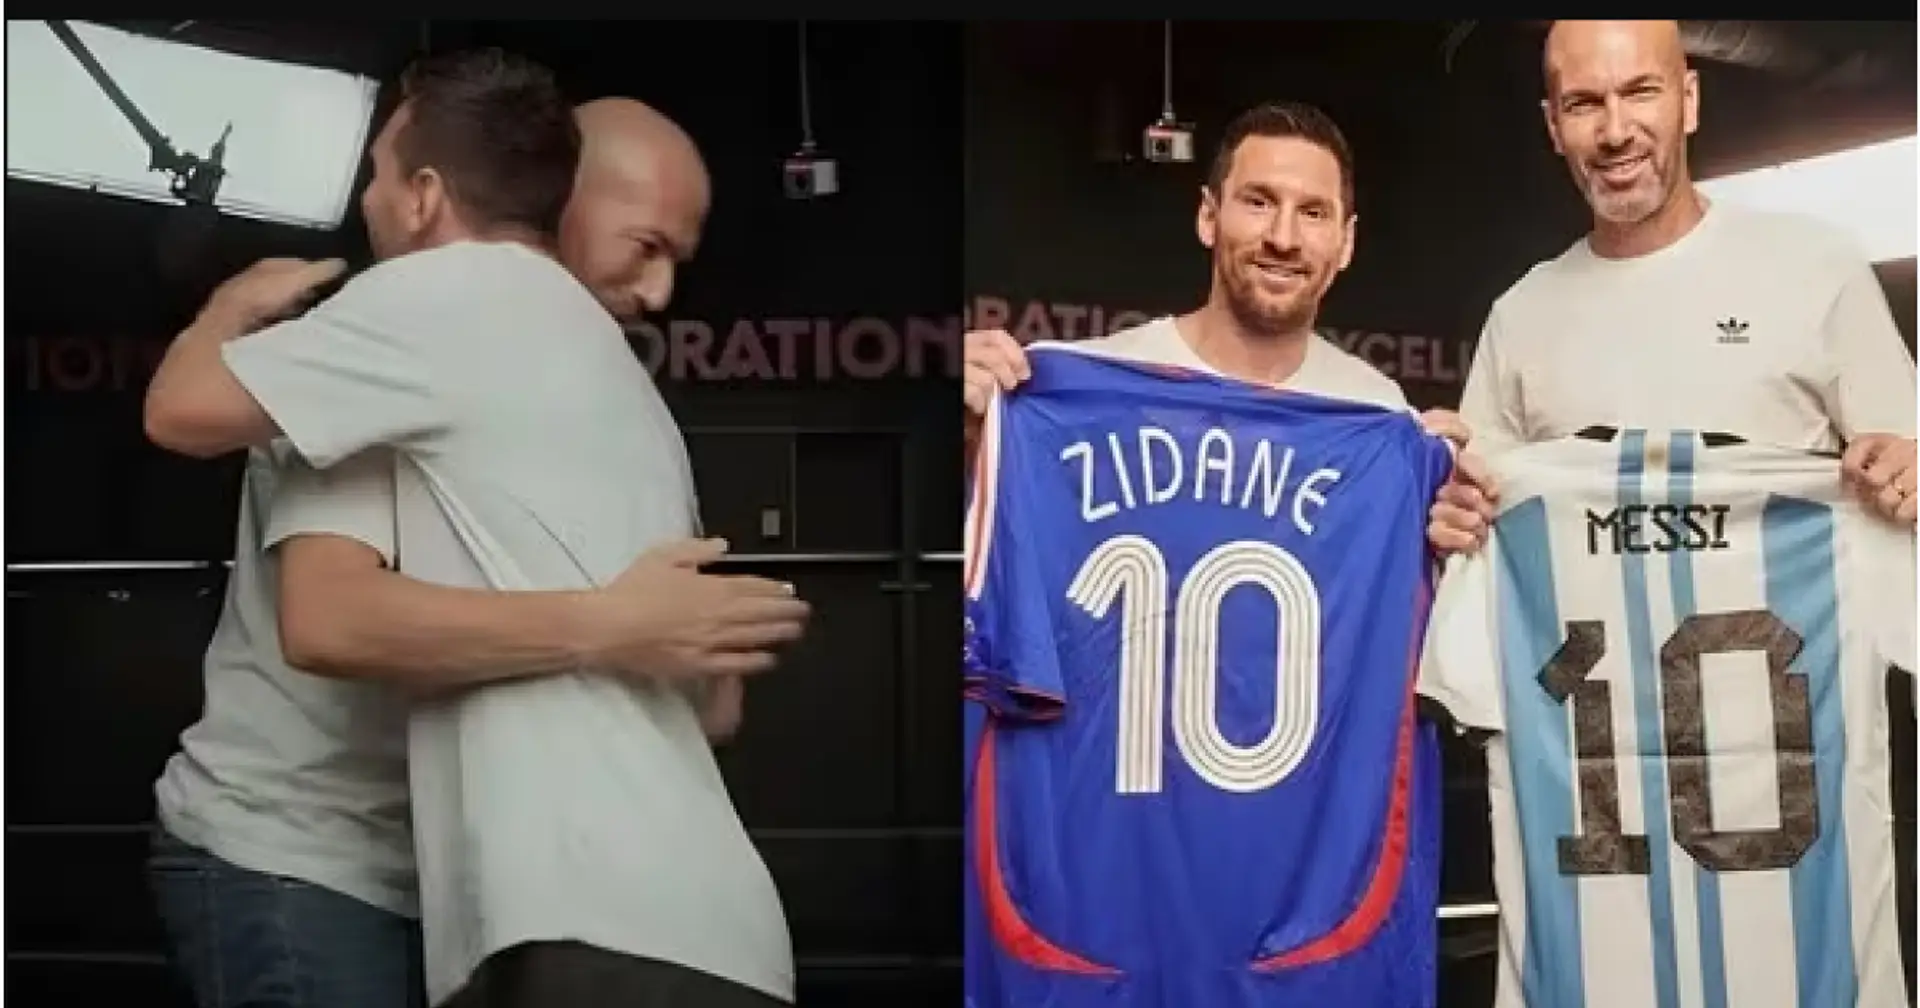 Zidane à Messi: "J'aurais aimé que nous jouions ensemble" Leo a répondu: "Tu sais combien je t'admire"